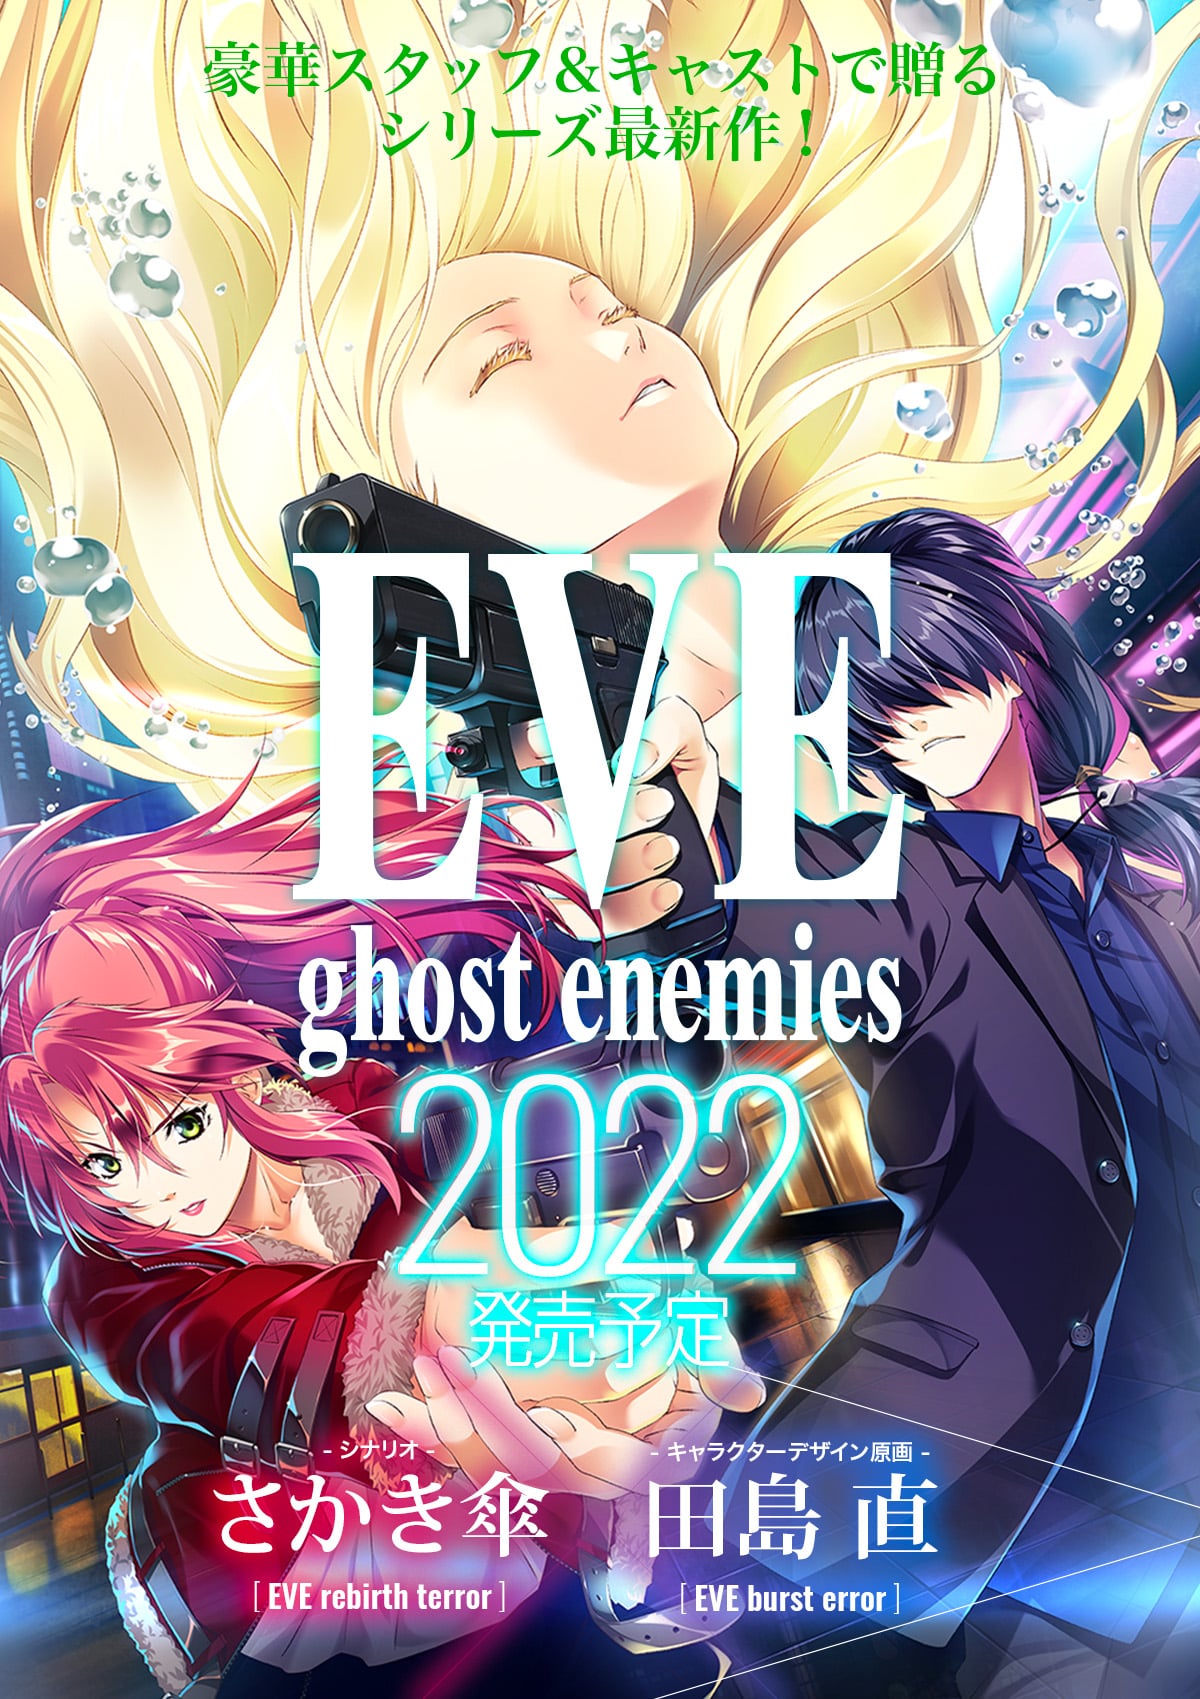 EVE ghost enemies